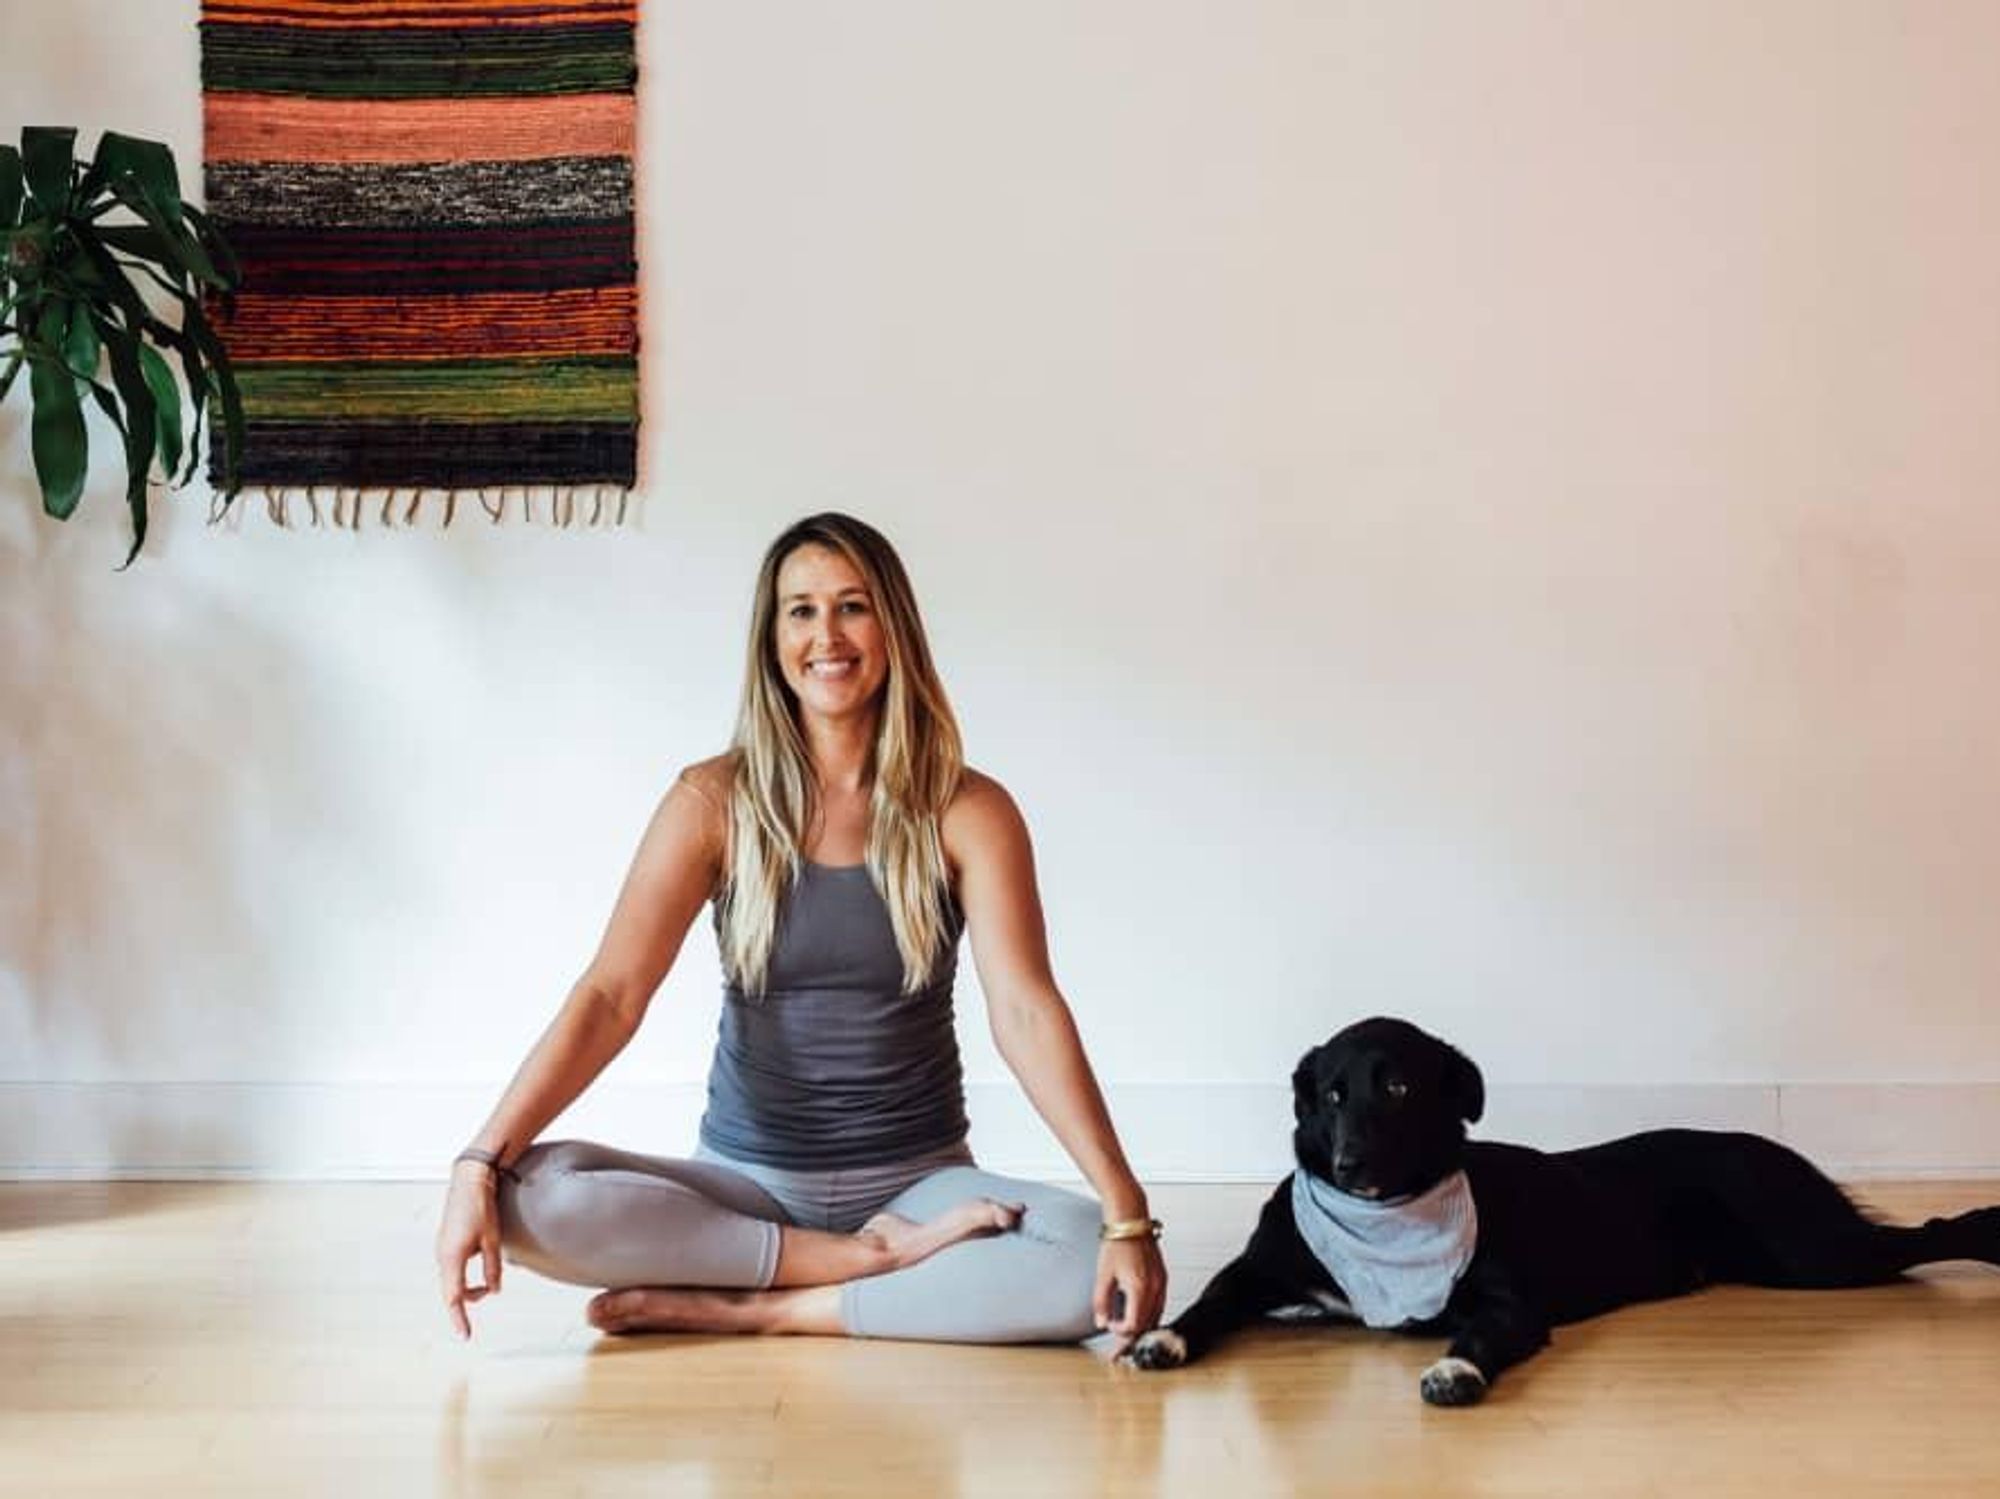 Super Yoga Palace instructor Kristin Goss